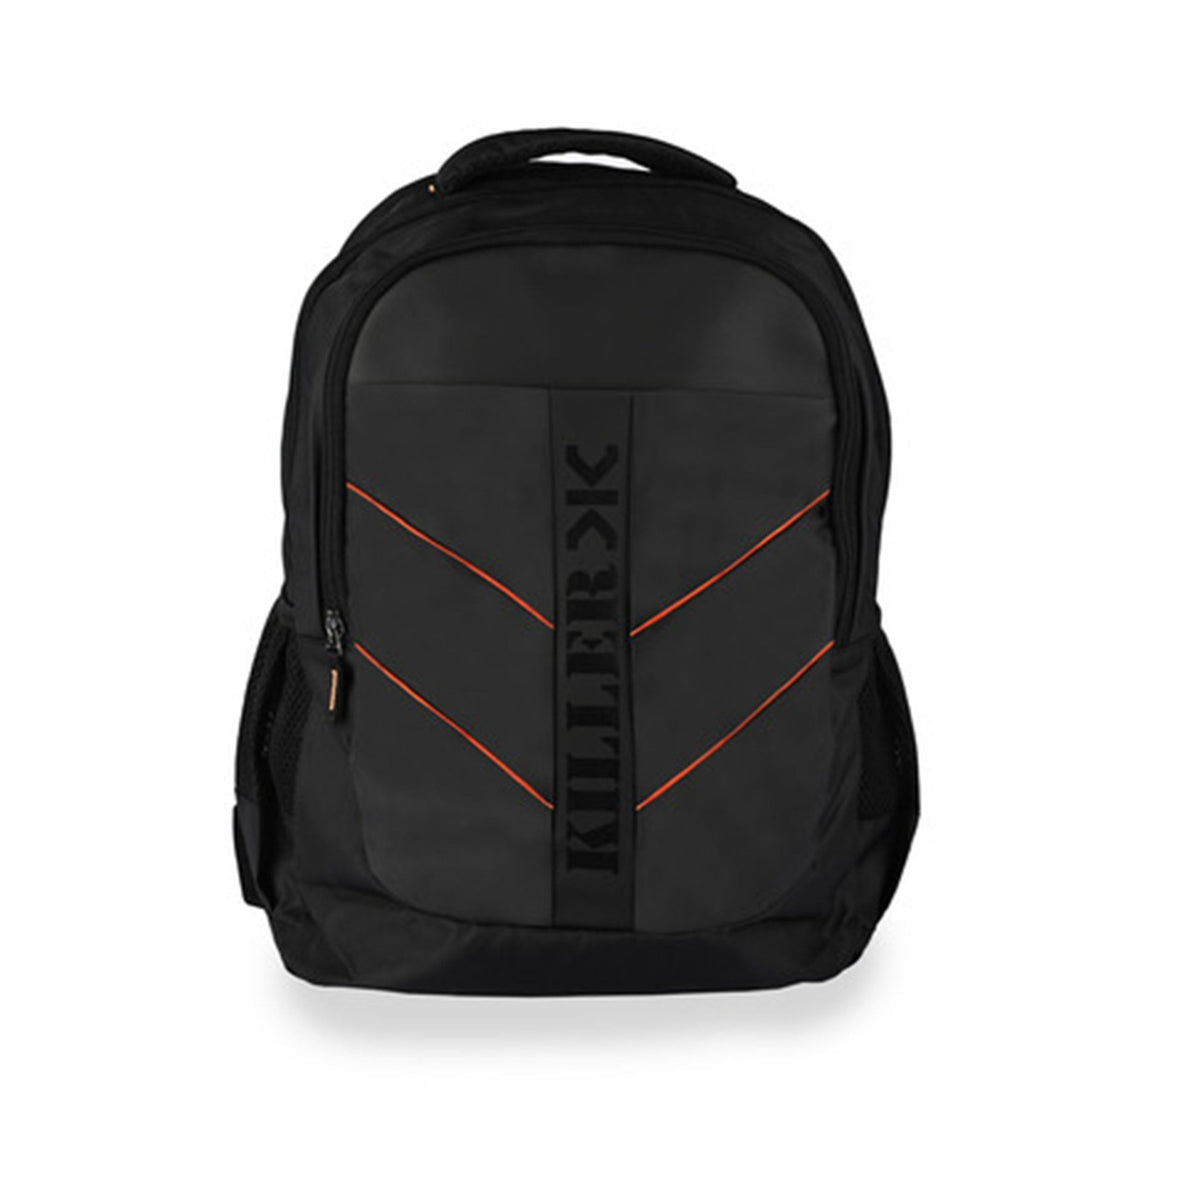 Buy Custom 3 In 1 Laptop Backpack Duffel Bag With Sling Bag